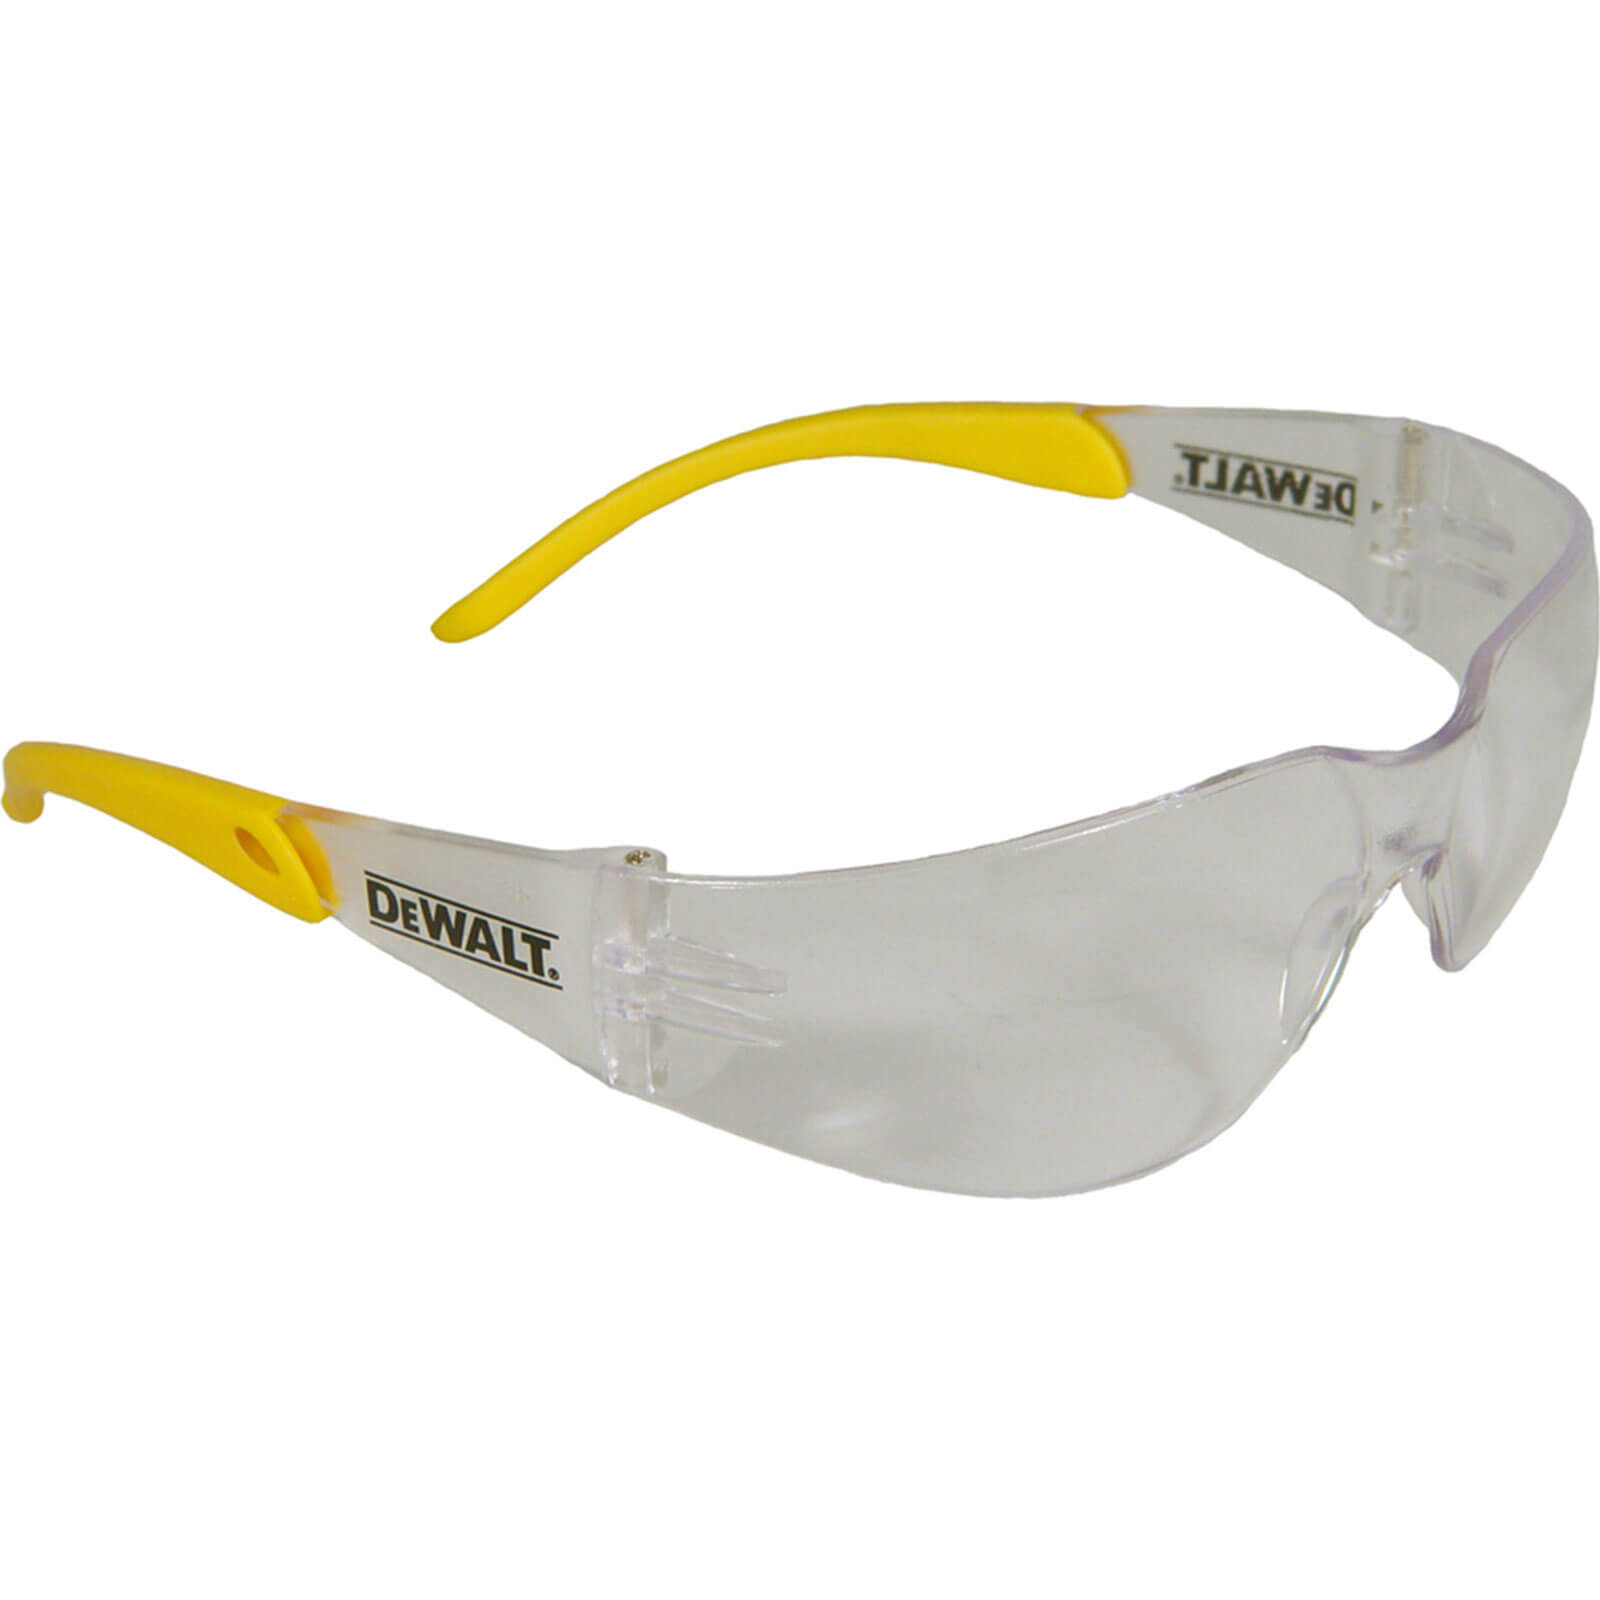 DeWalt Protector Indoor Outdoor Safety Glasses